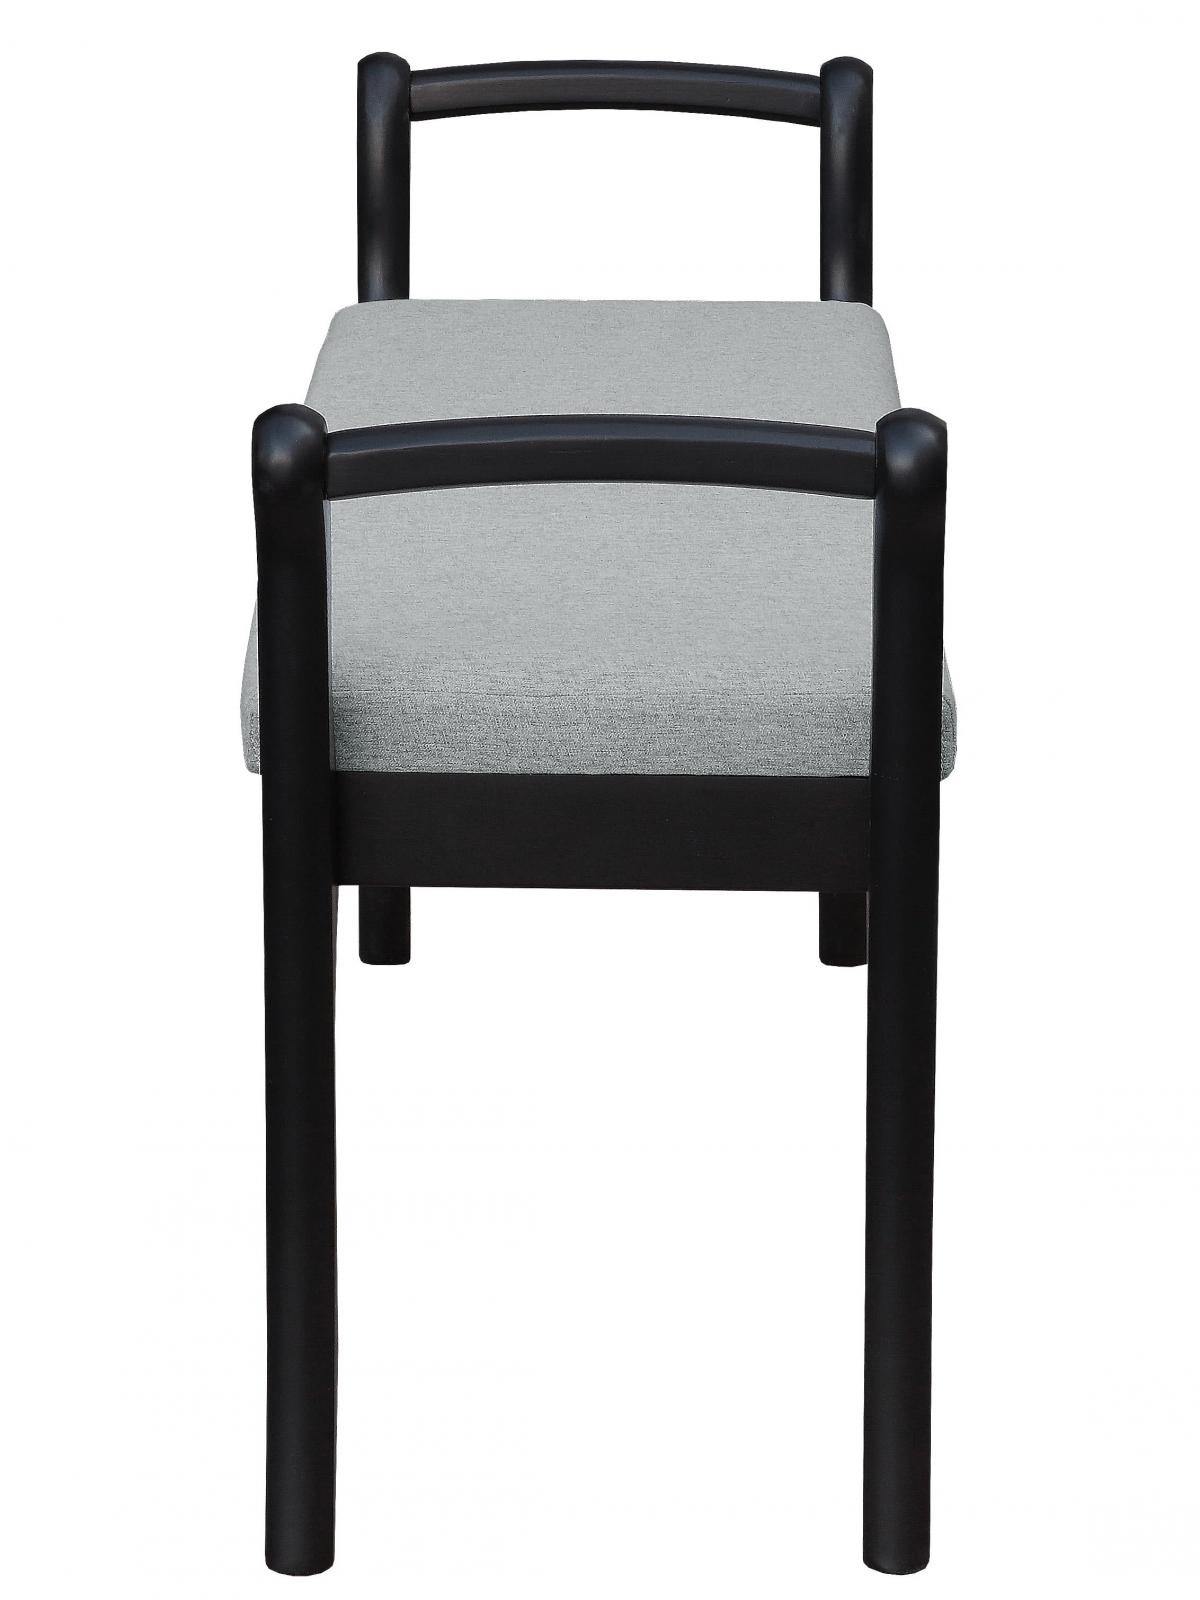 Купить скамейка Мебелик Скамья Мебелик для прихожей с подлокотниками мягкая, Венге/ Серый, Венге/ Серый Венге/ Серый дешево на официальном сайте